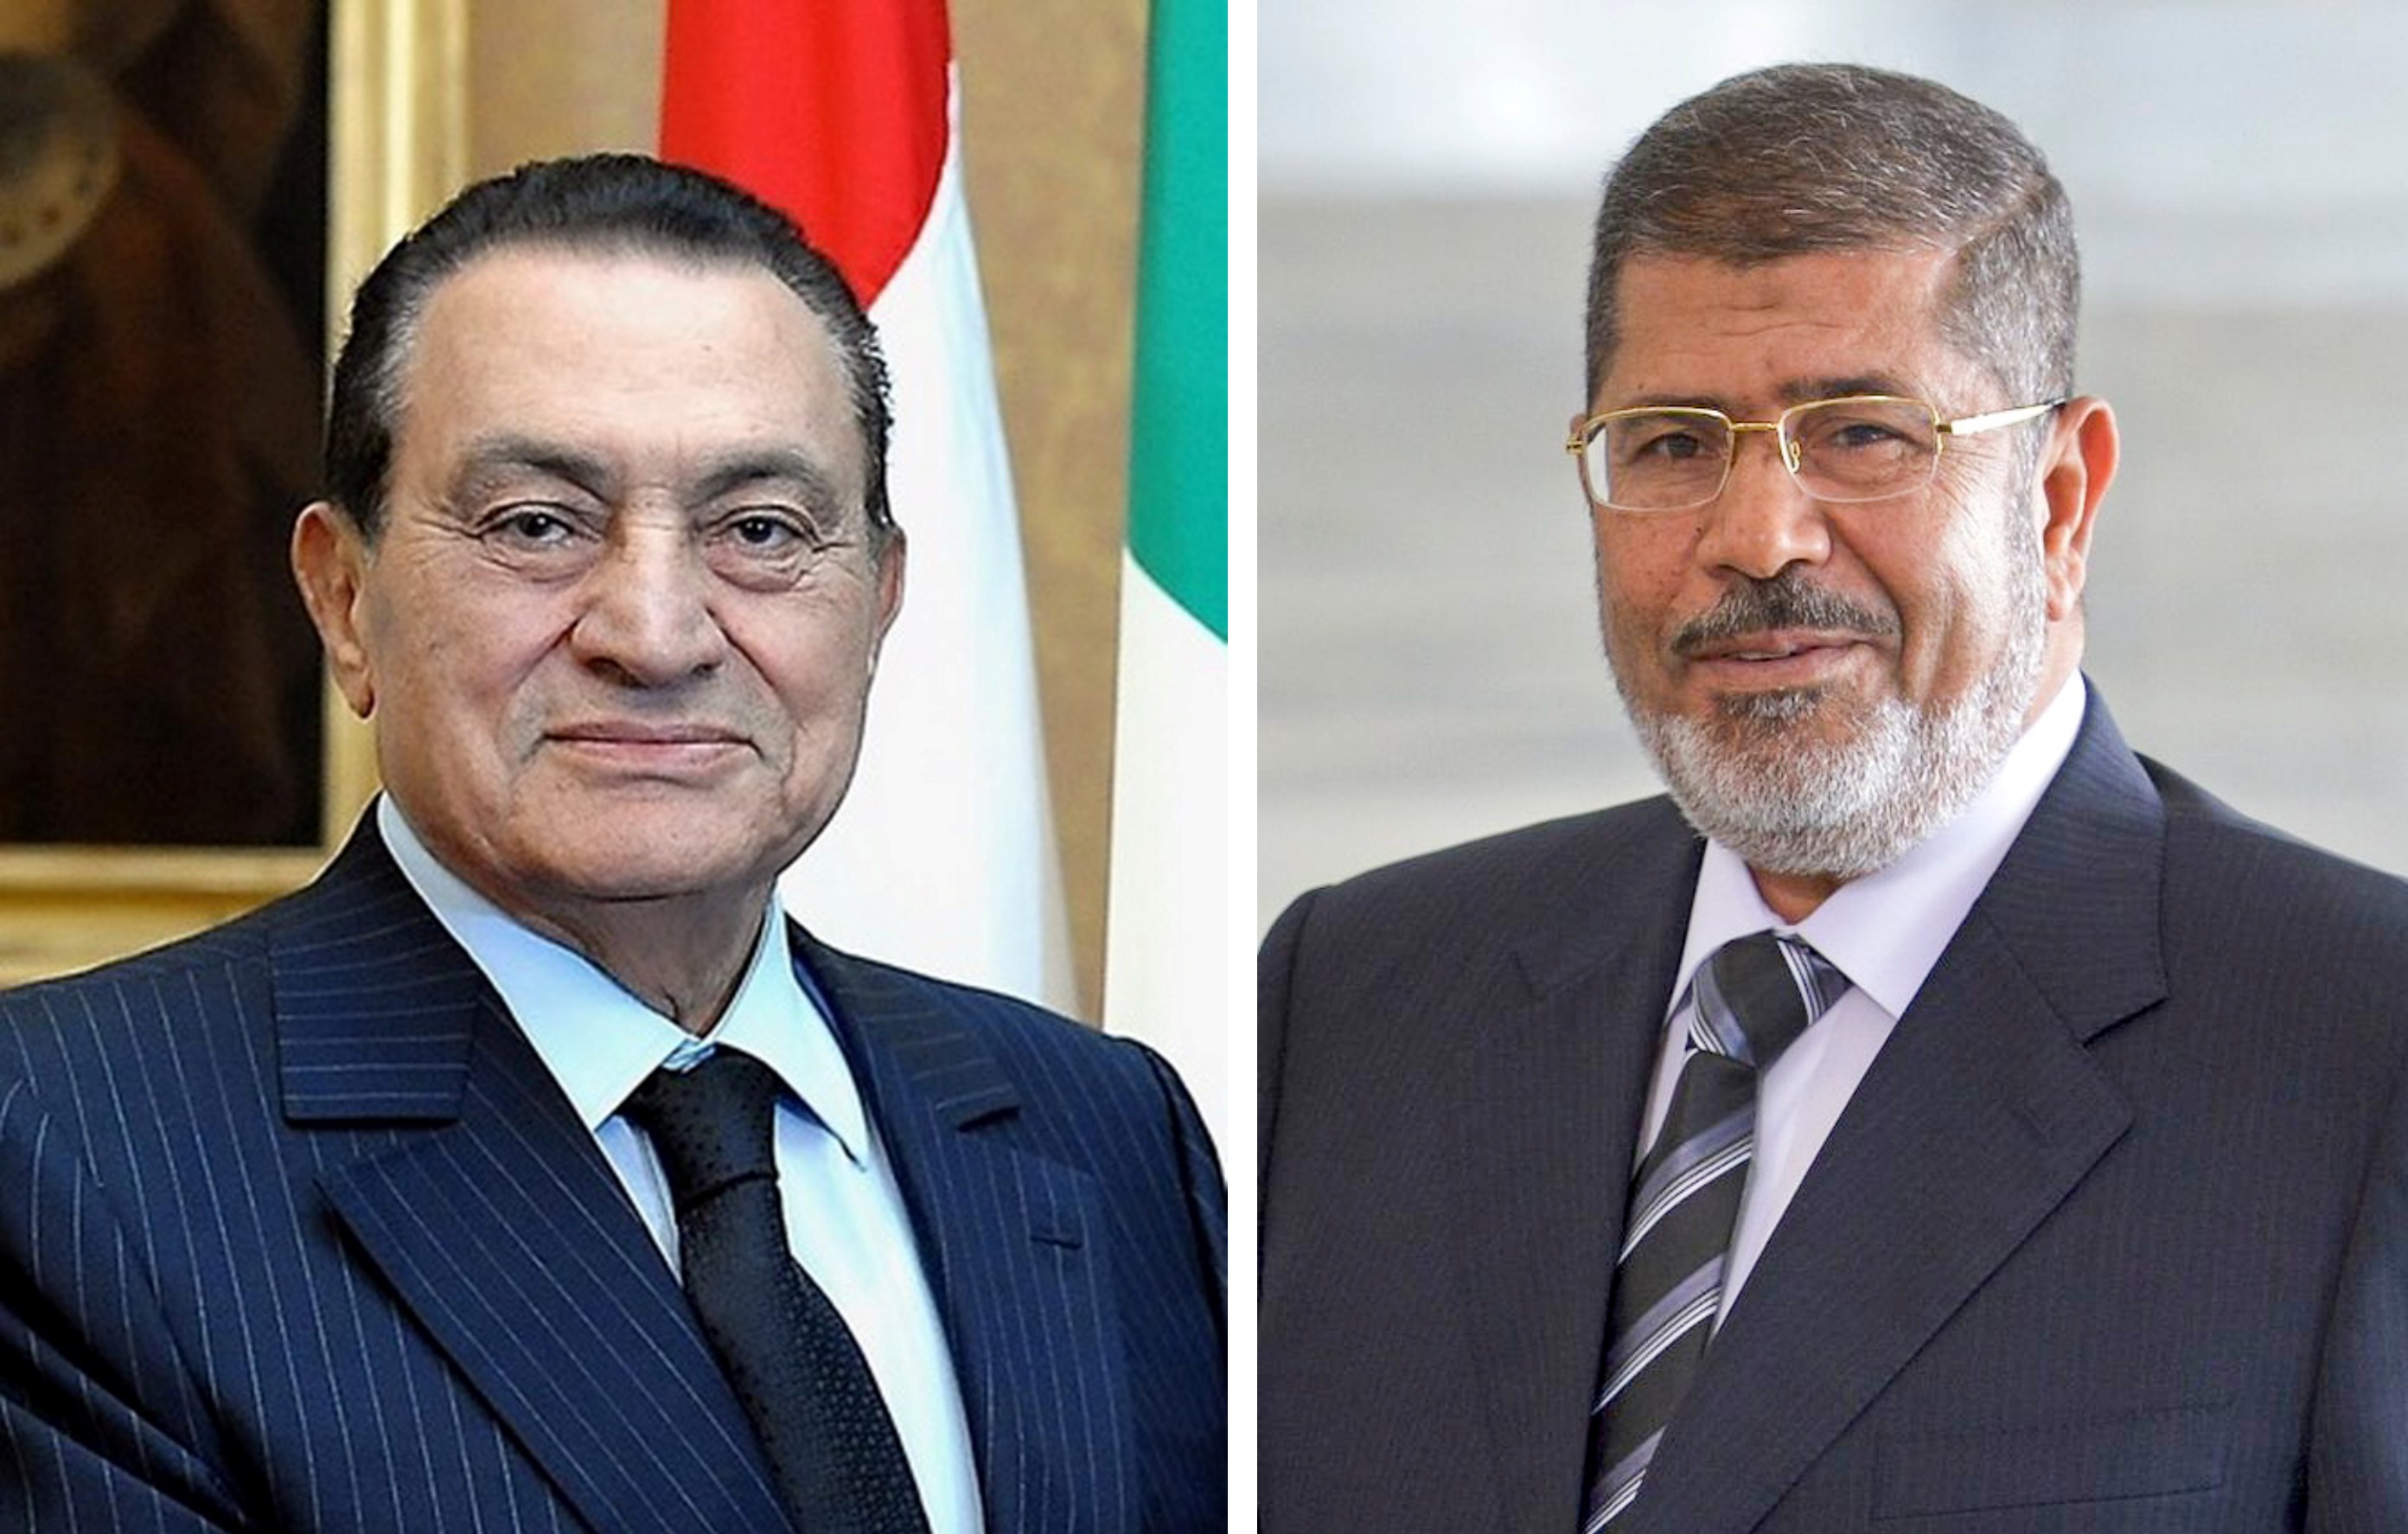 On the left, Hosni Mubarak. On the right, Mohamed Morsi.